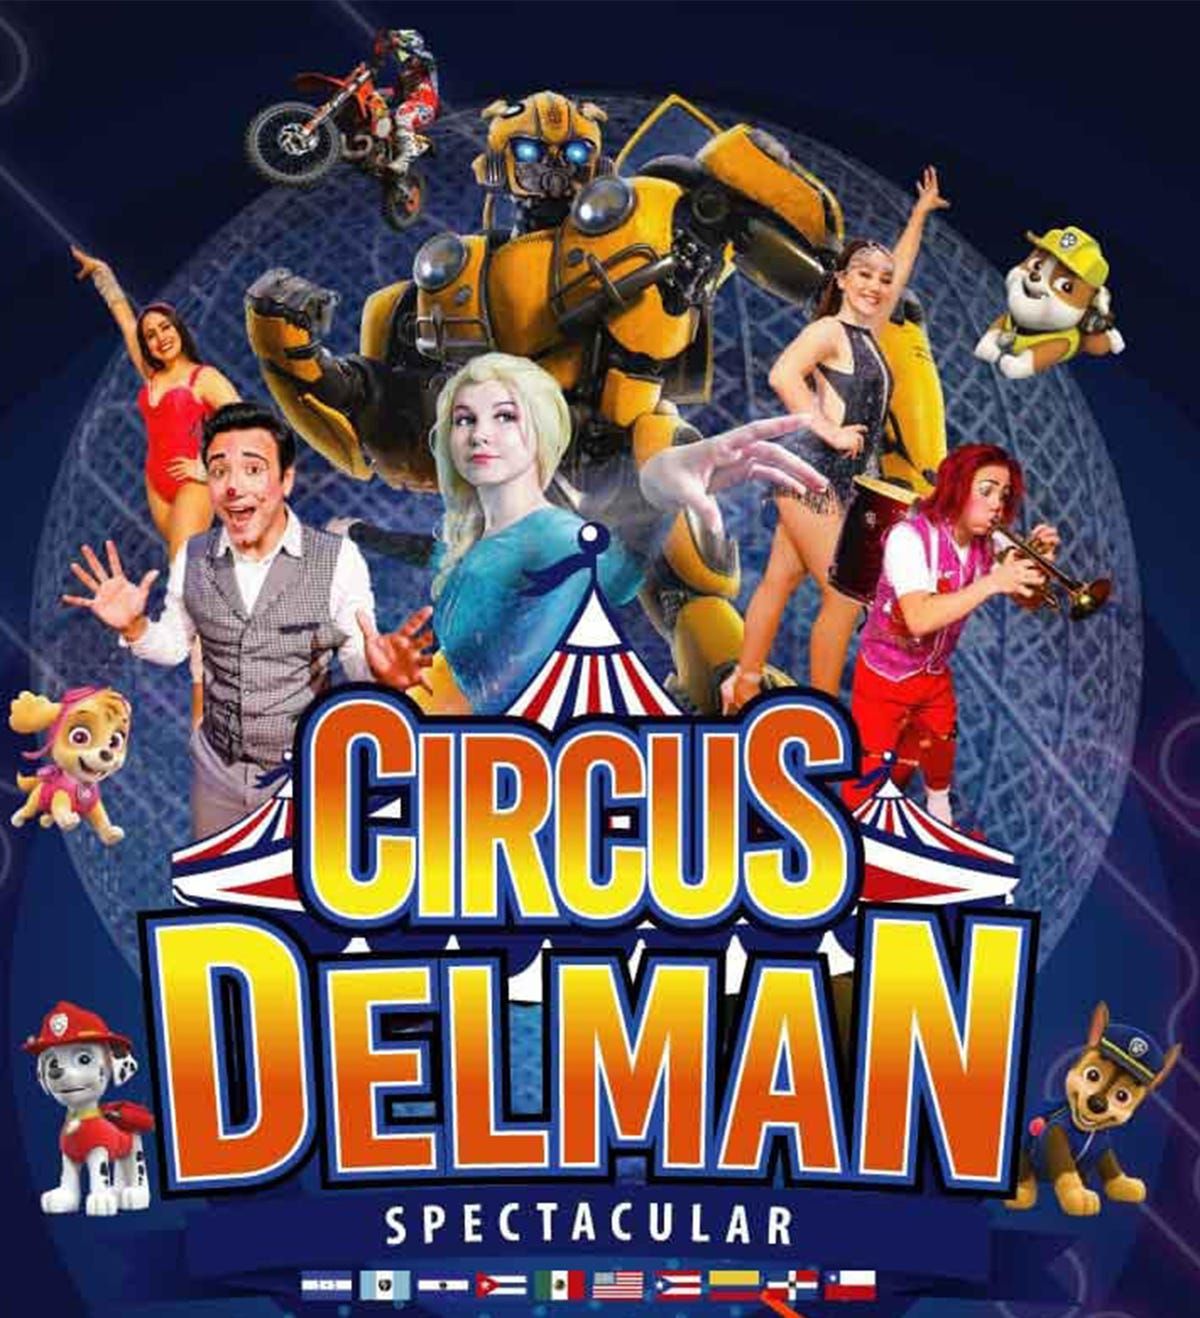 Circus Delman